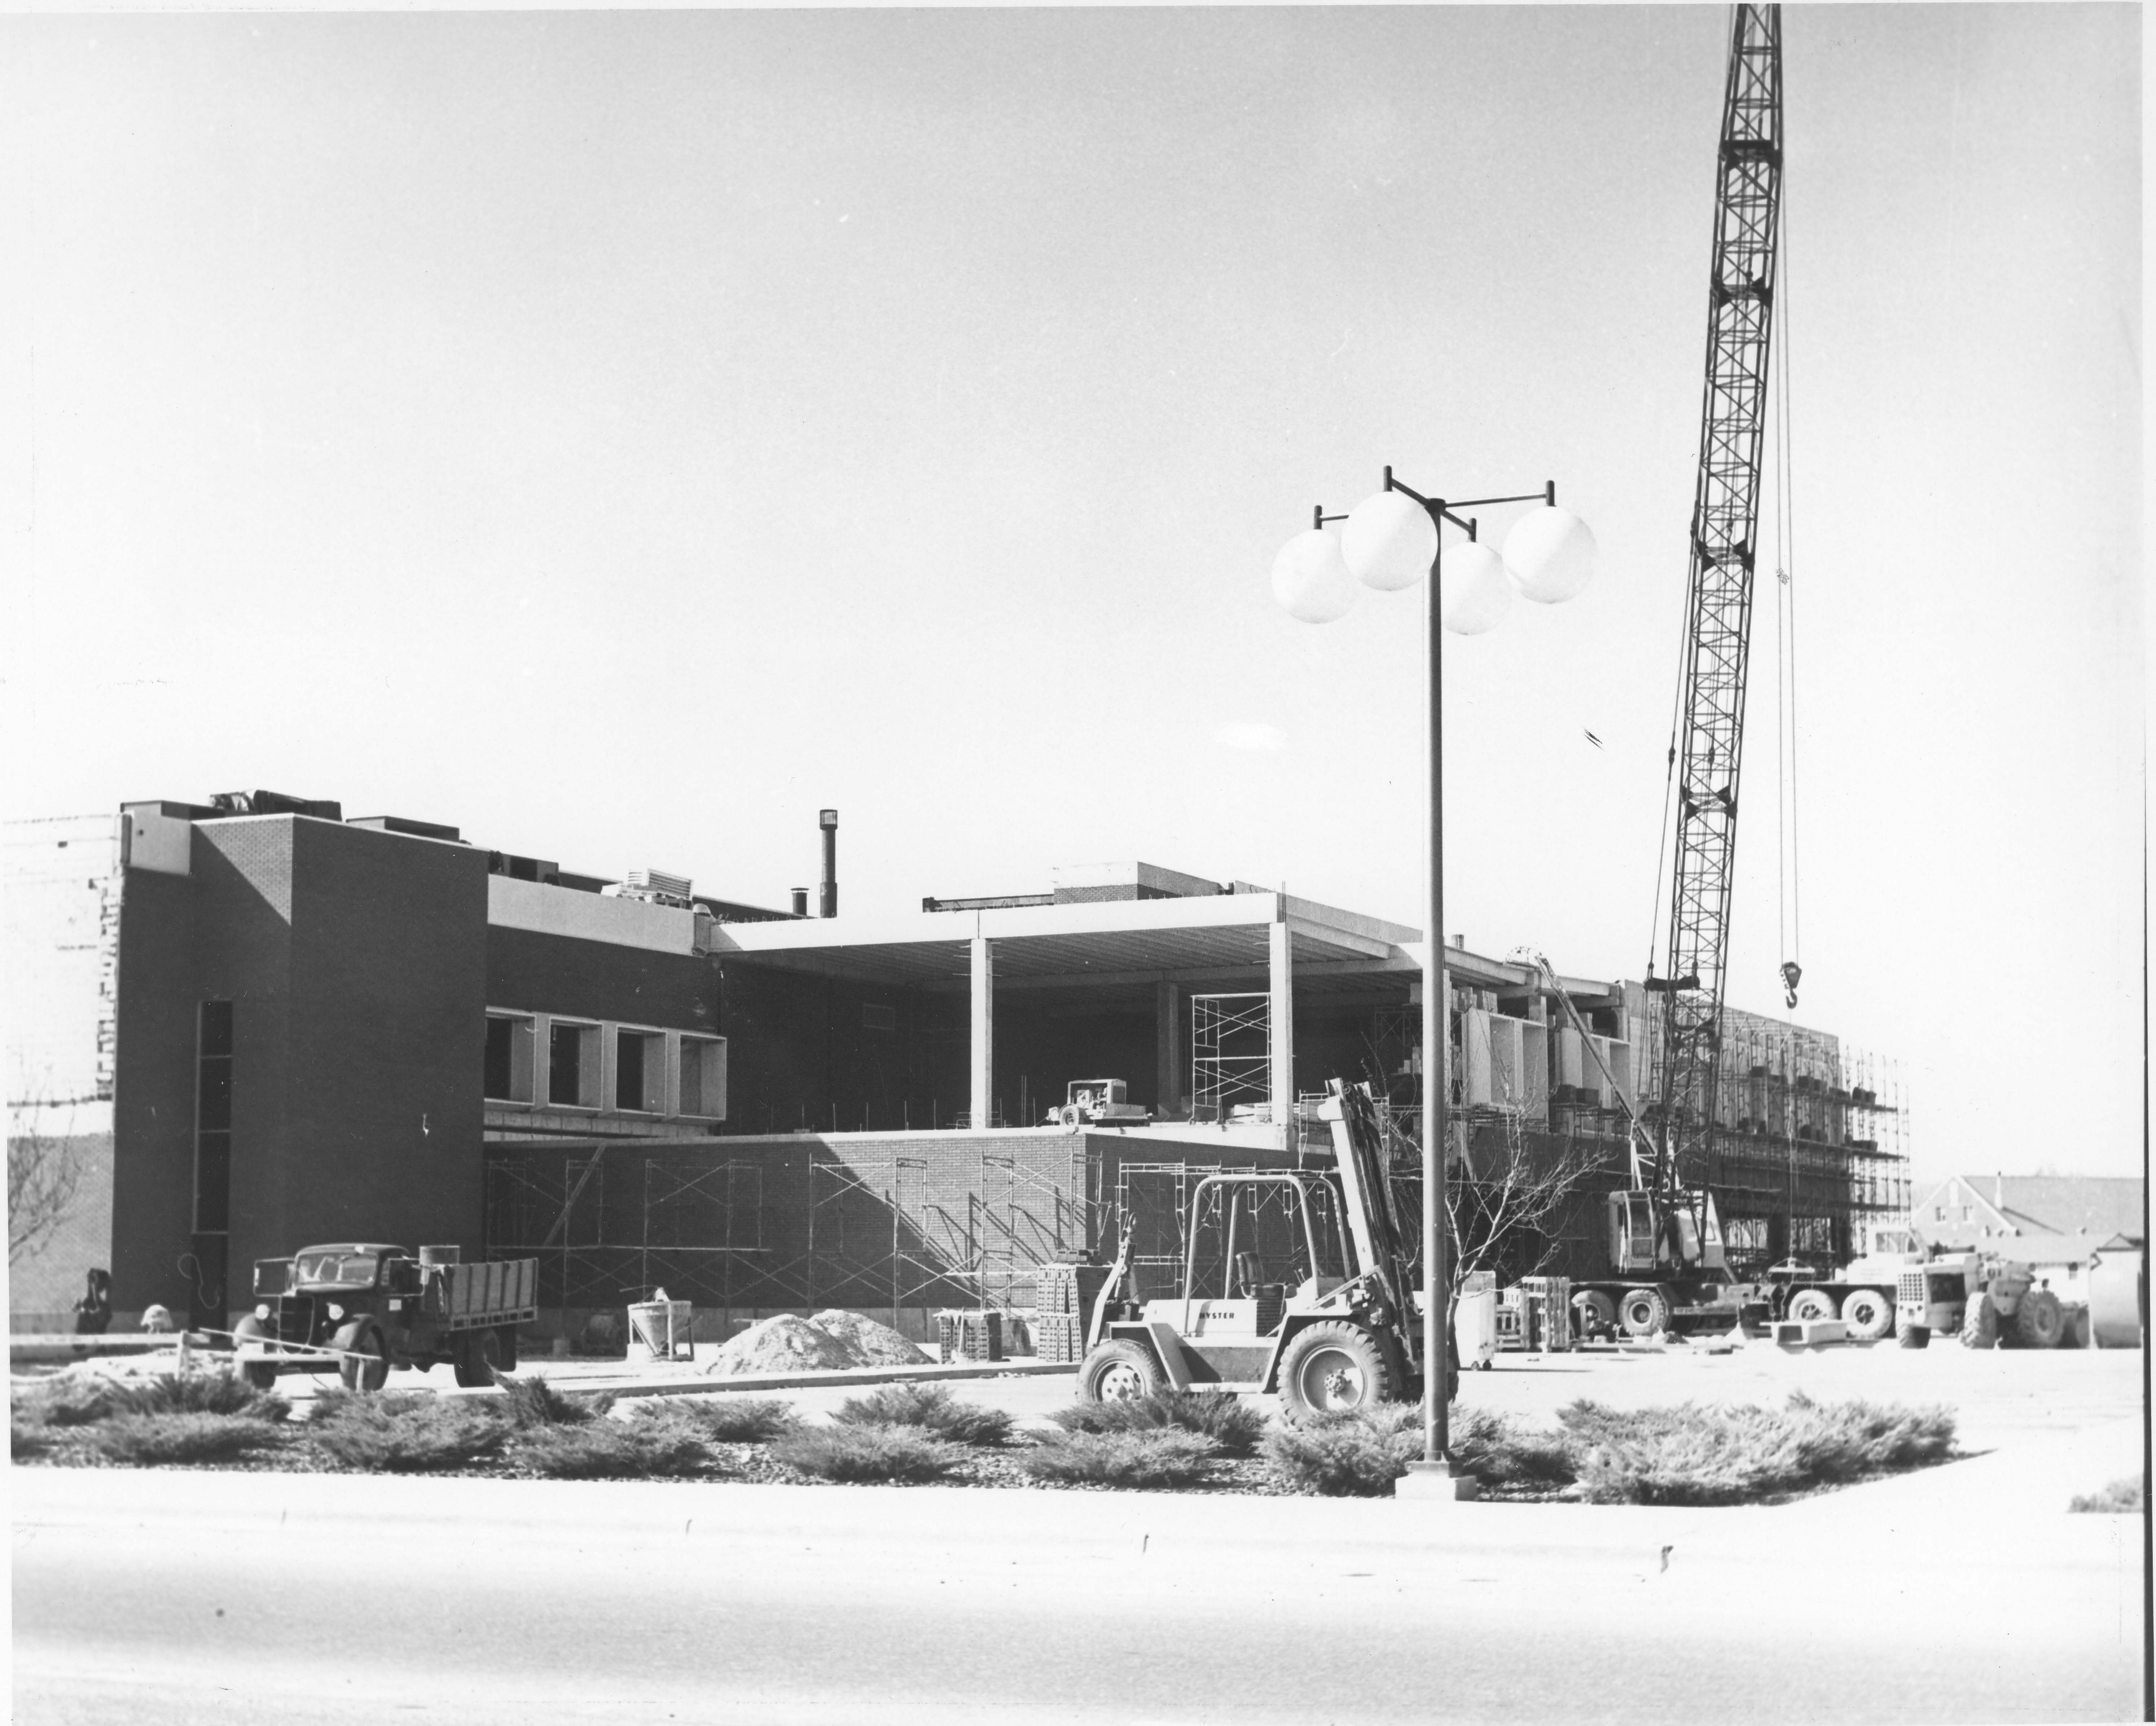 Student Union Building construction